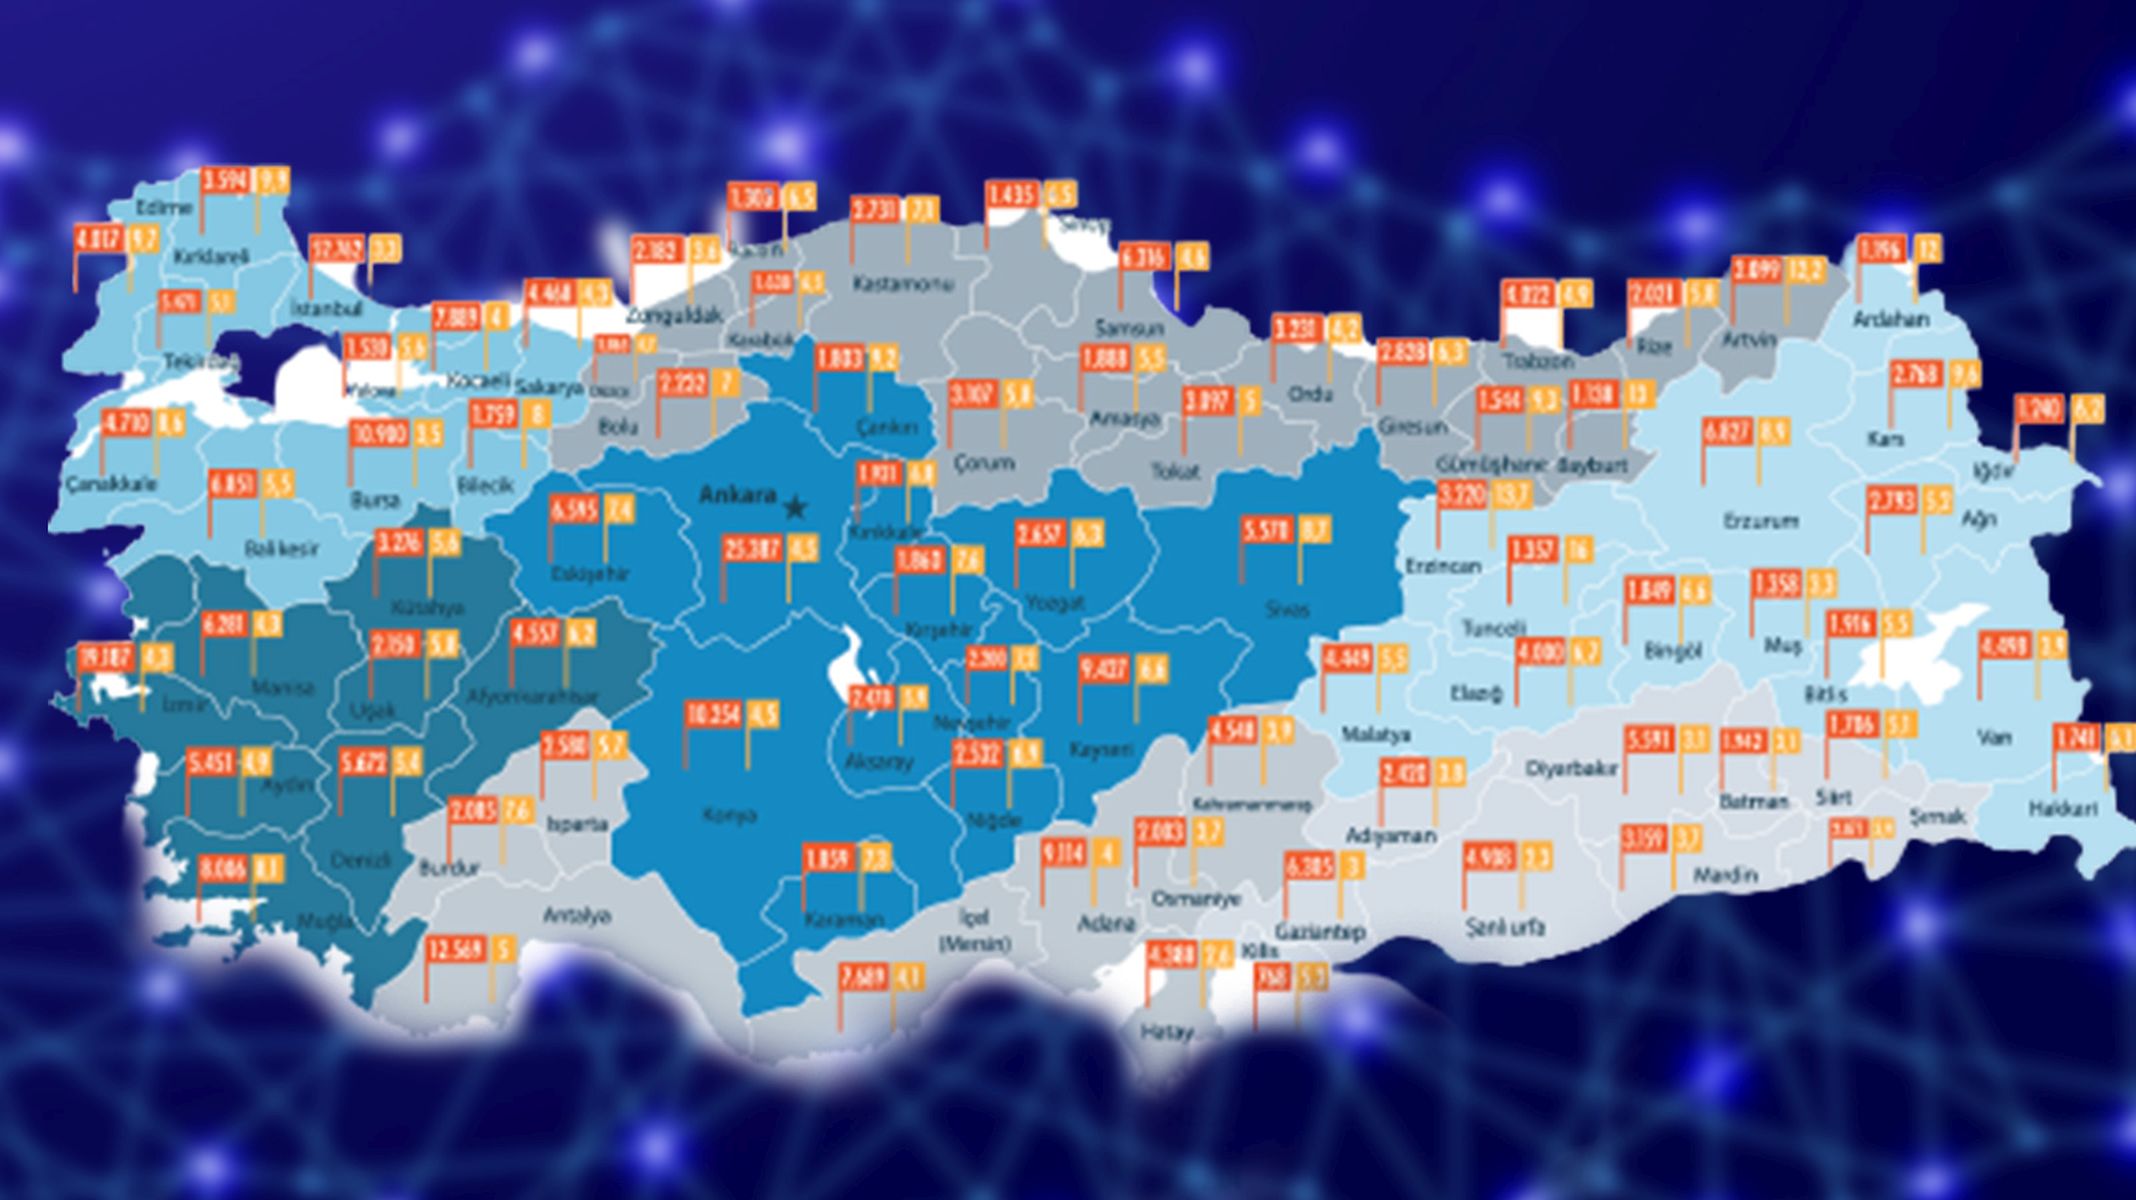 Türkiye 471 bin km fiber altyapıya sahip ve internet abone sayısı 88,2 milyona yükseldi